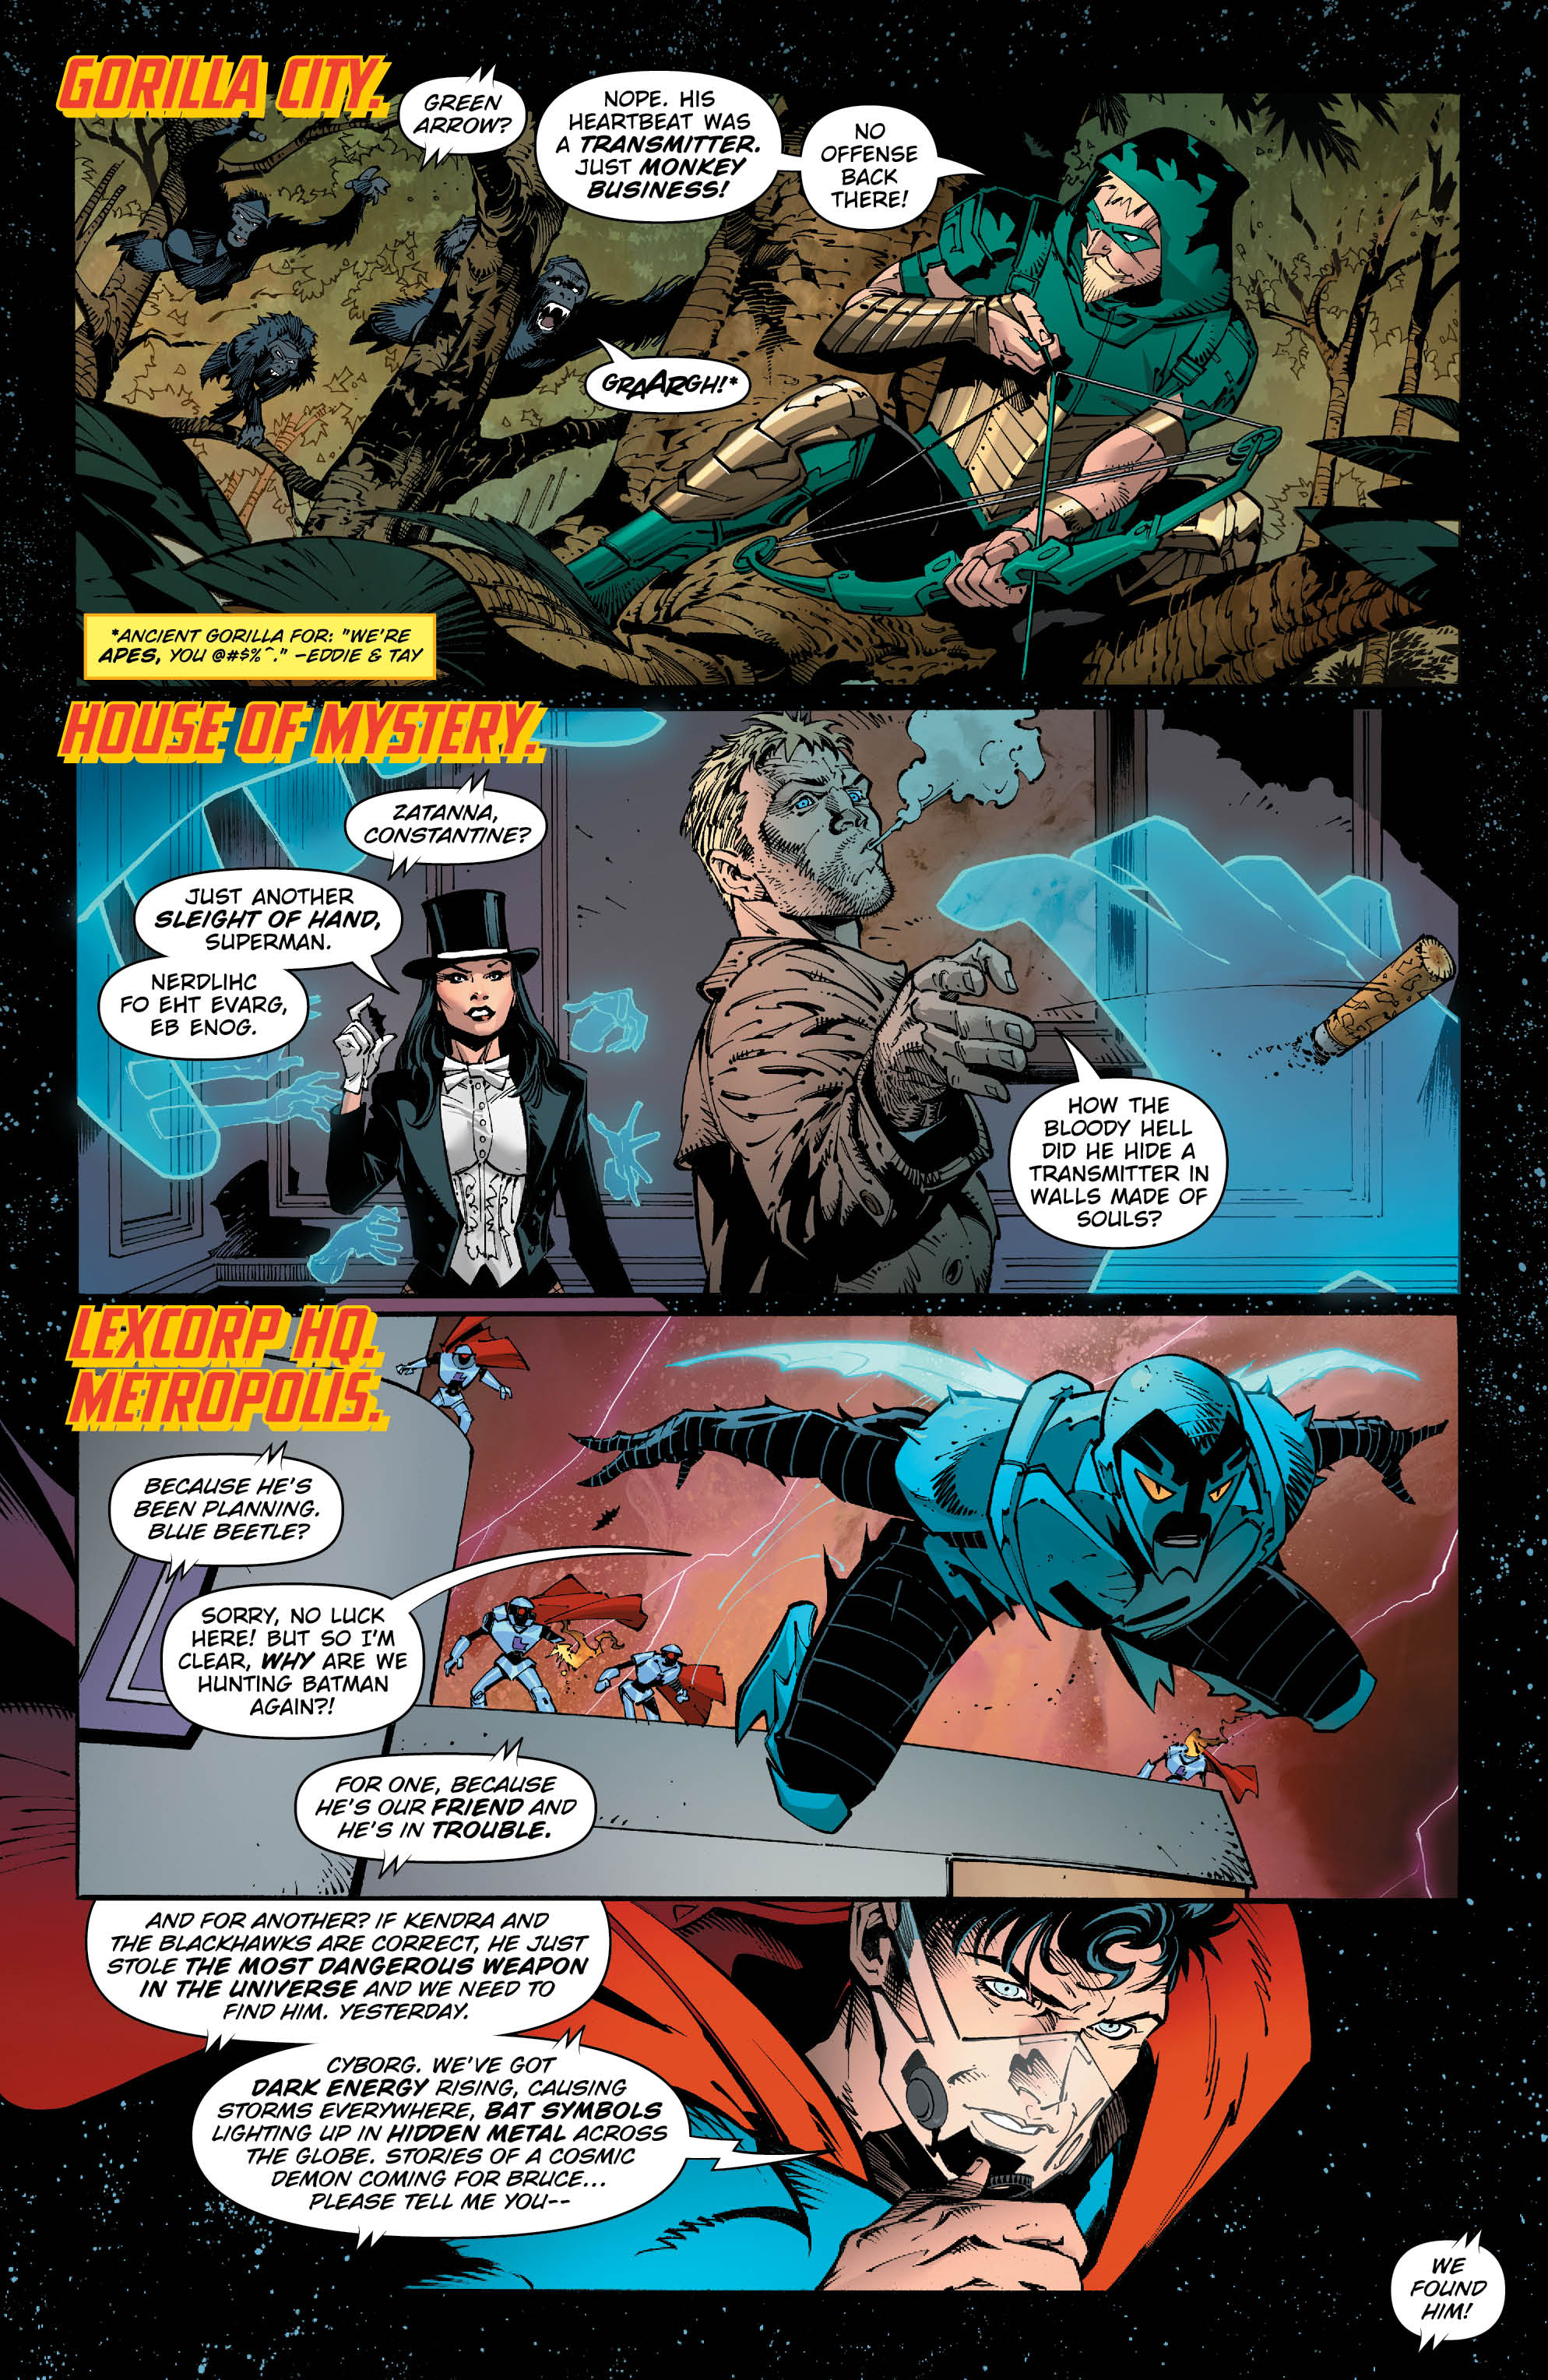 Metal 2 - Page 2 - DC Comics News